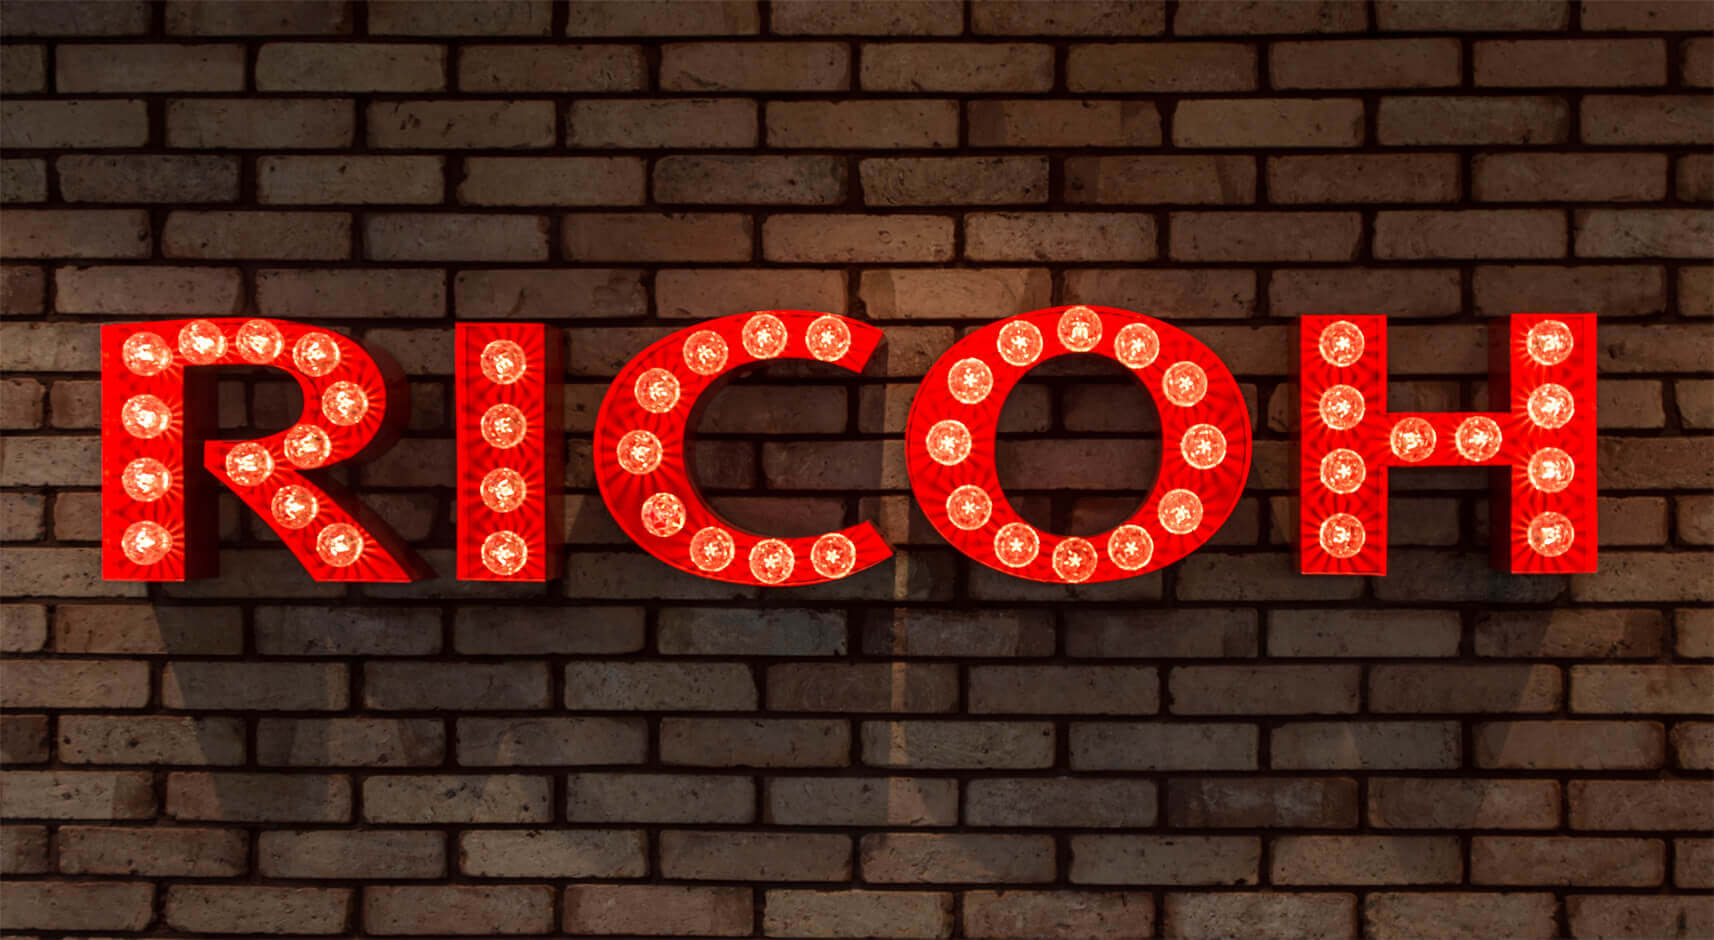 RICOH - RICOH - Lettere con lampadine su un muro di mattoni